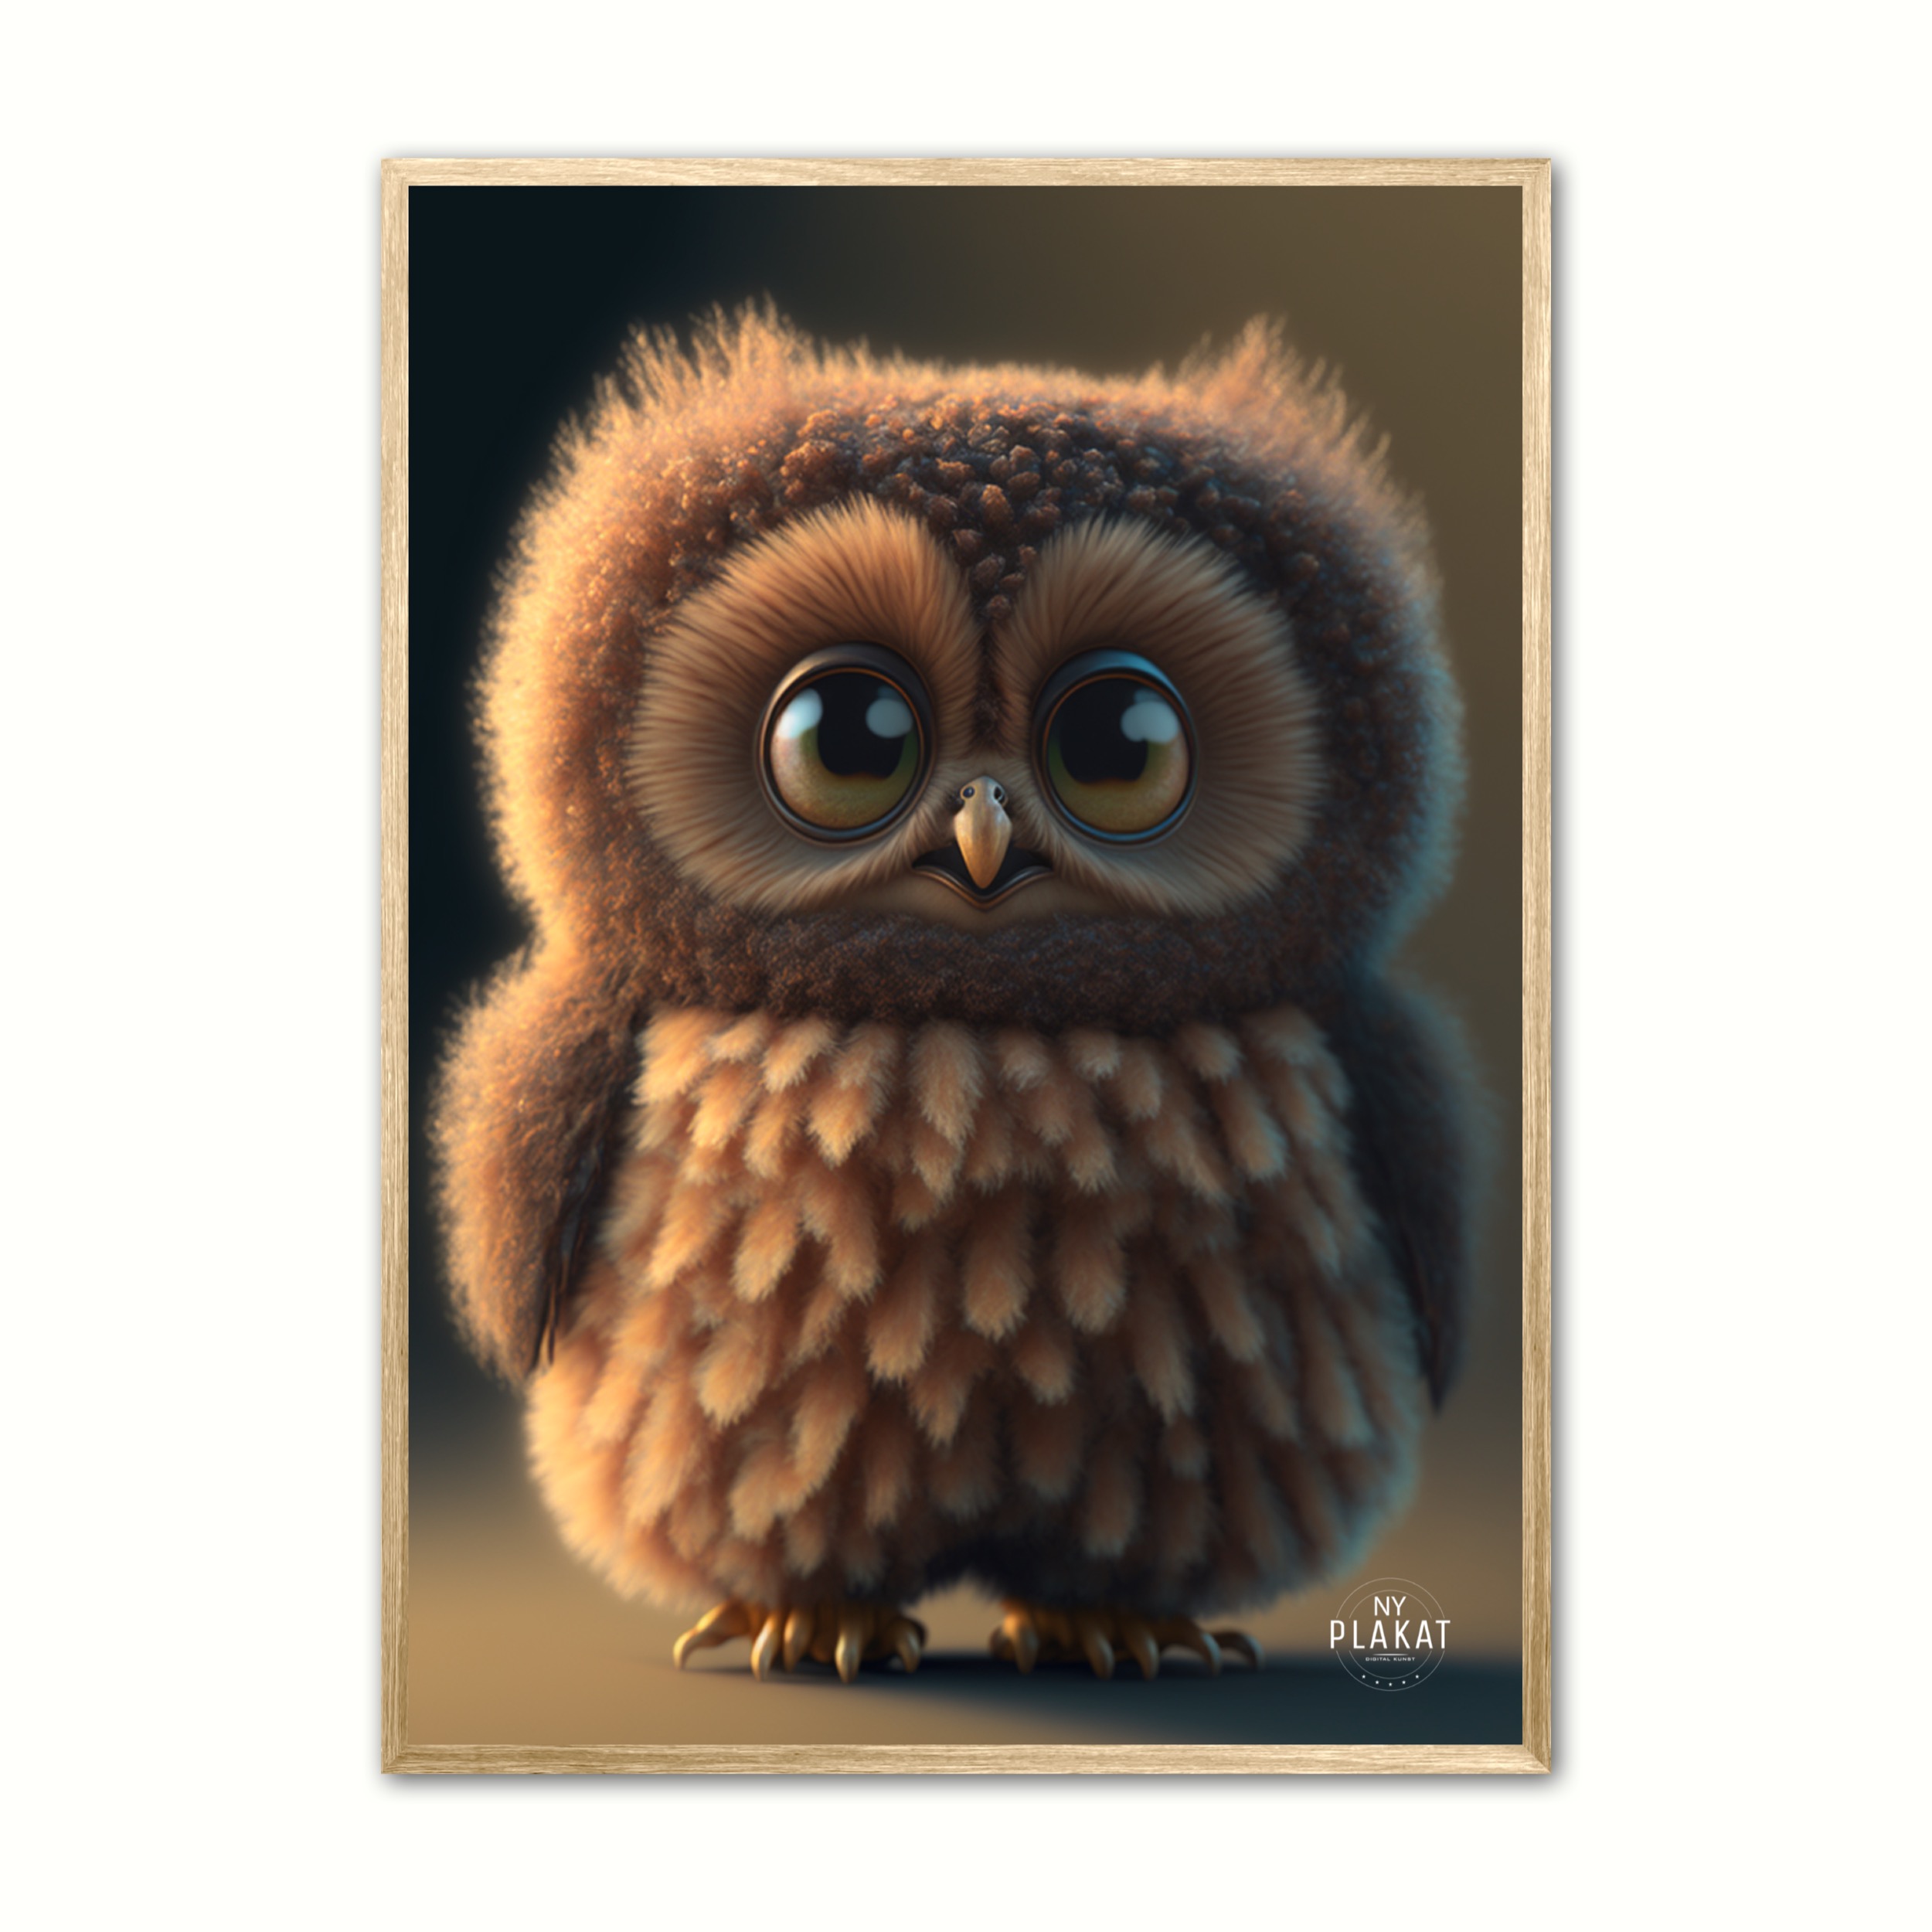 Plakat med Owlette - Ugle 21 x 29,7 cm (A4)